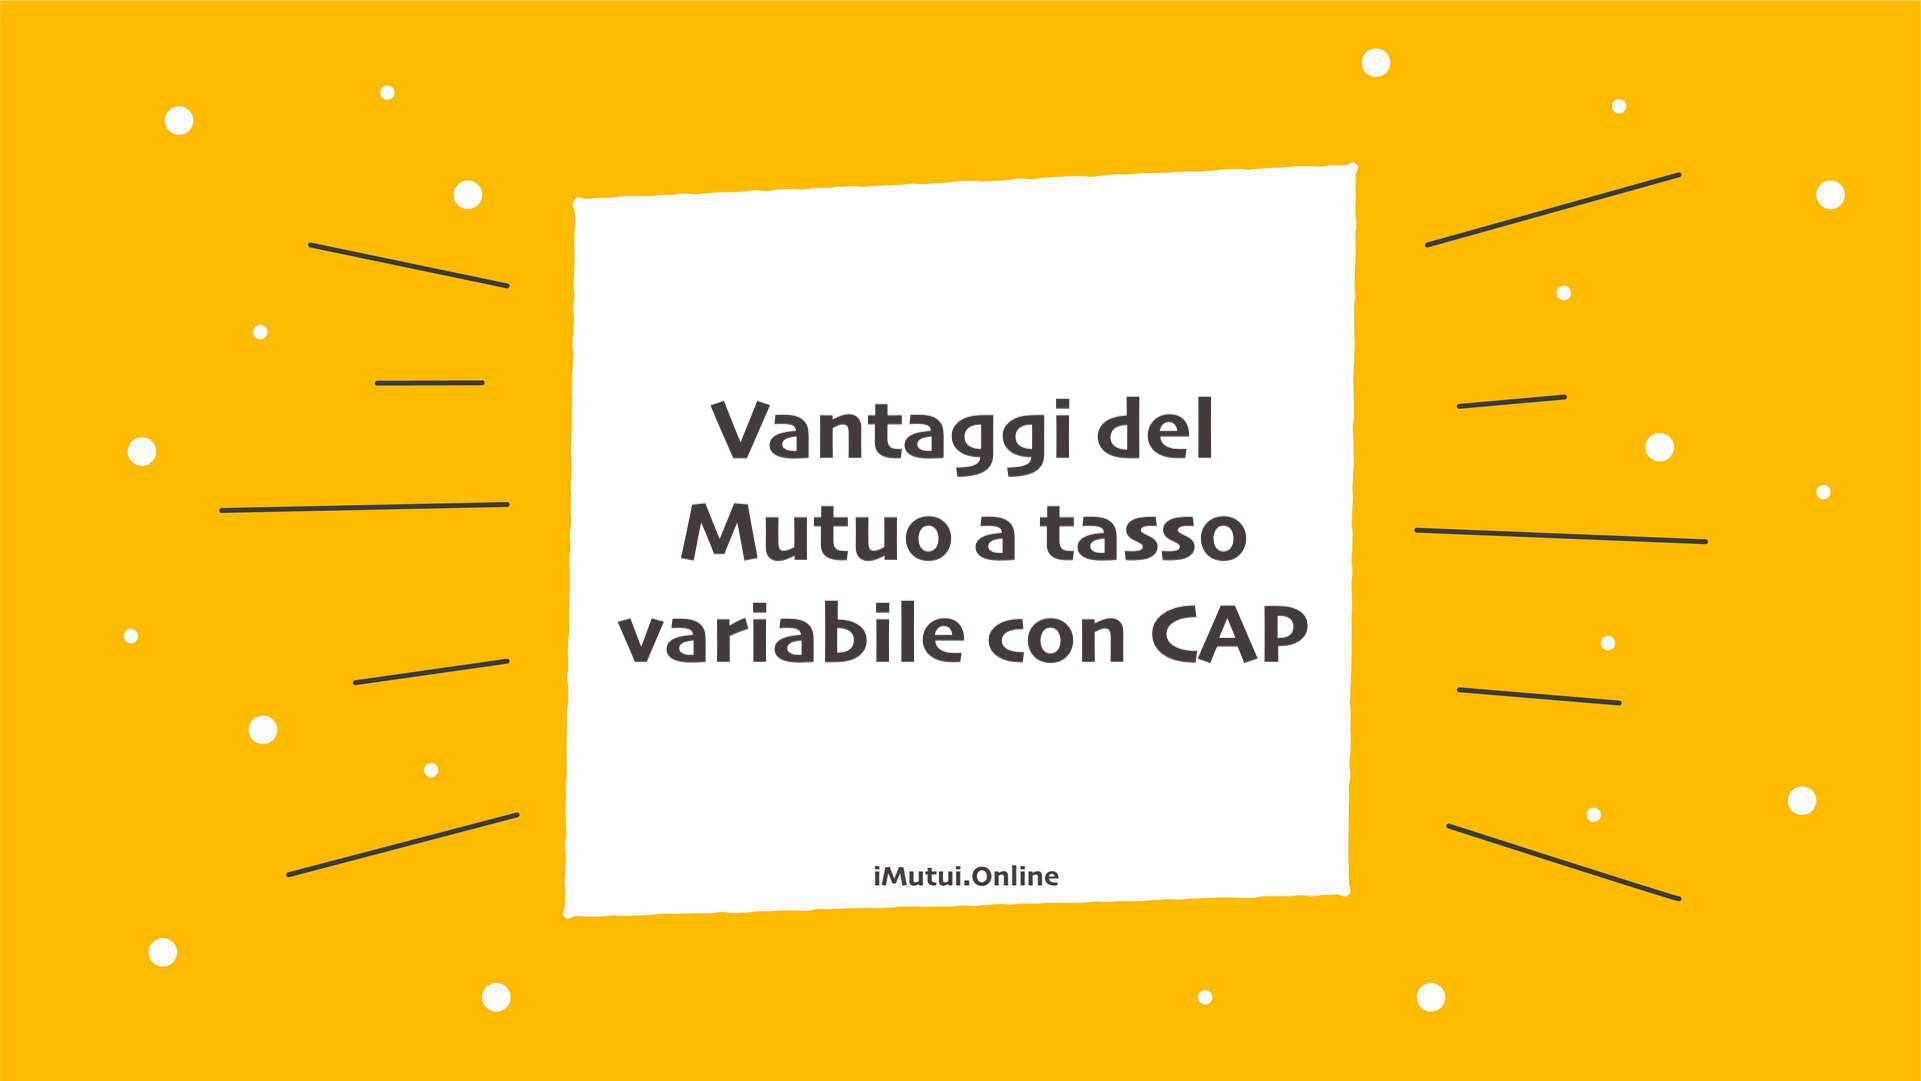 Vantaggi del Mutuo a tasso variabile con CAP